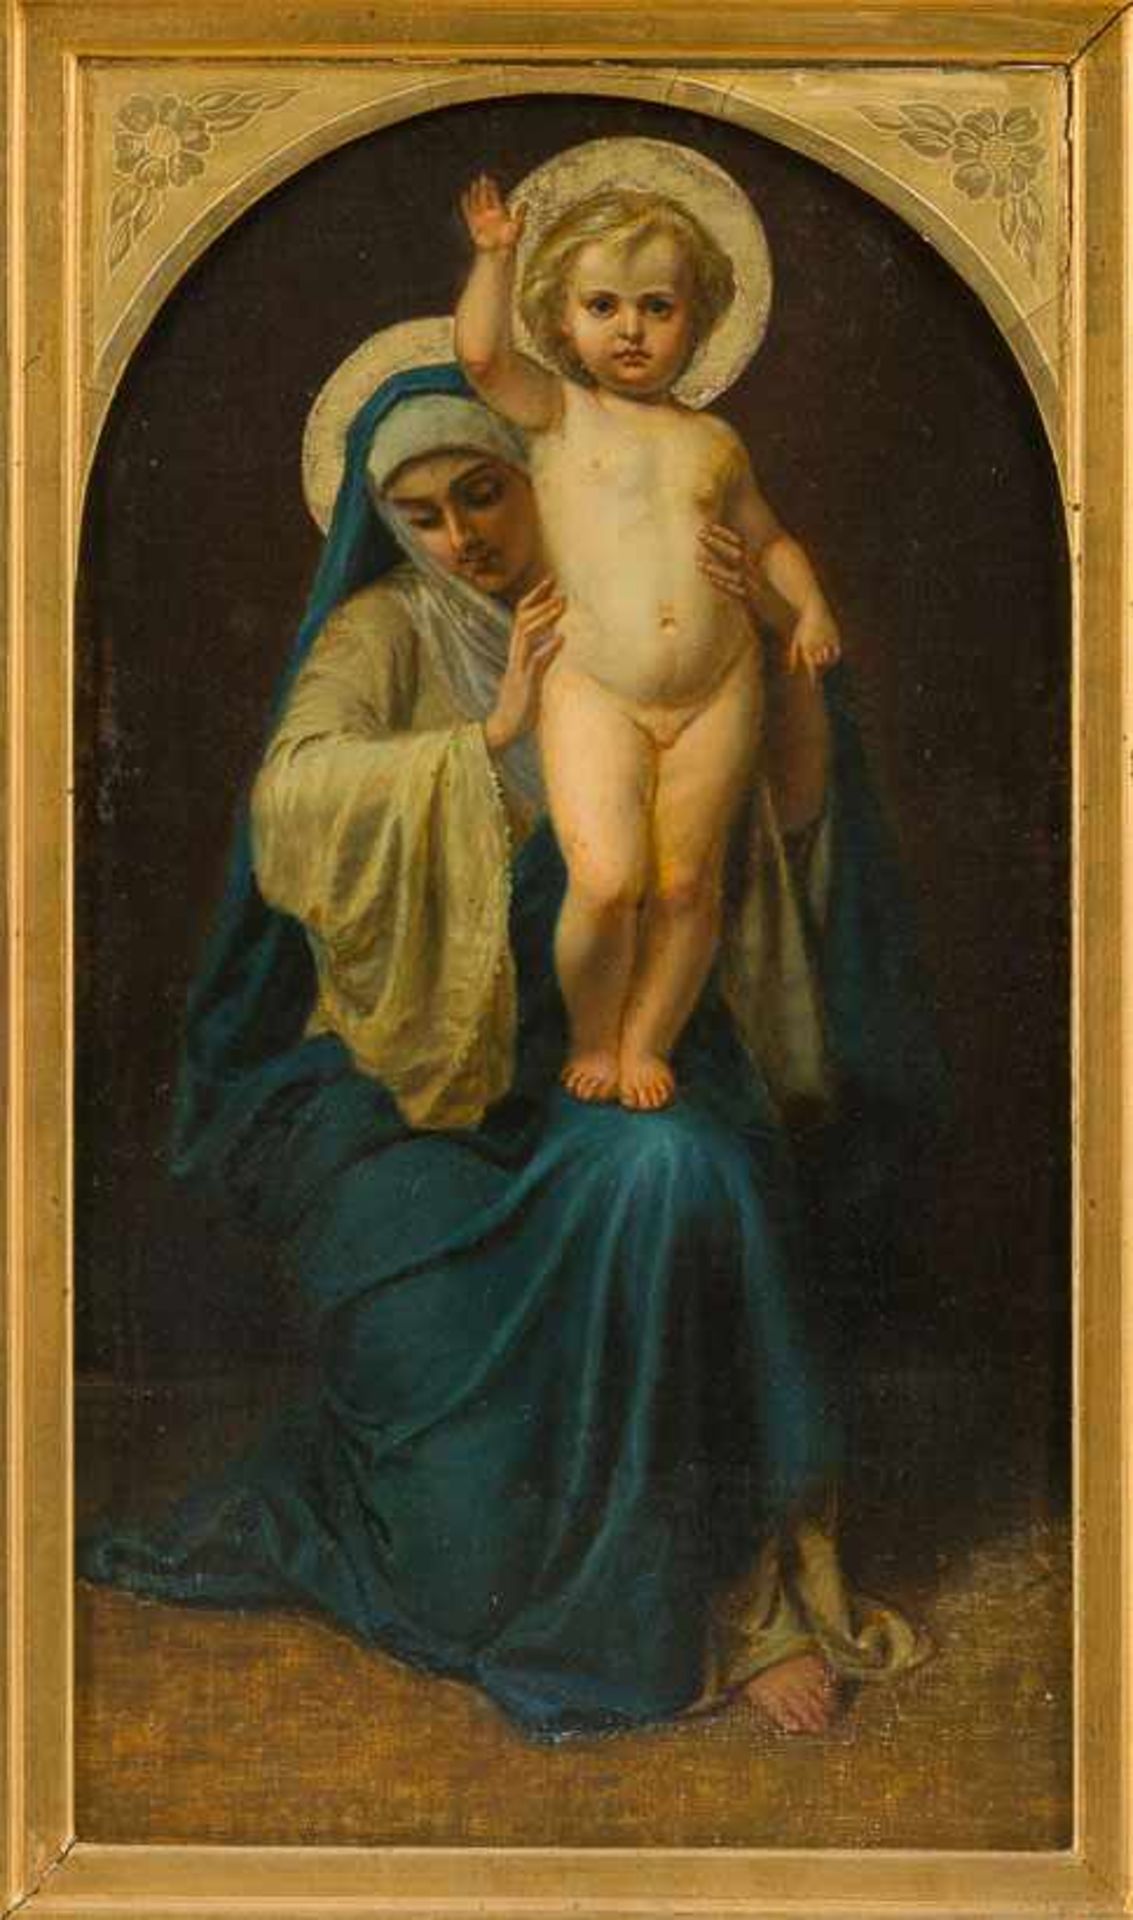 Bruni, Feodor Antonovich (Mailand, St. Petersburg 1799-1875) Sitzende Madonna, den stehenden